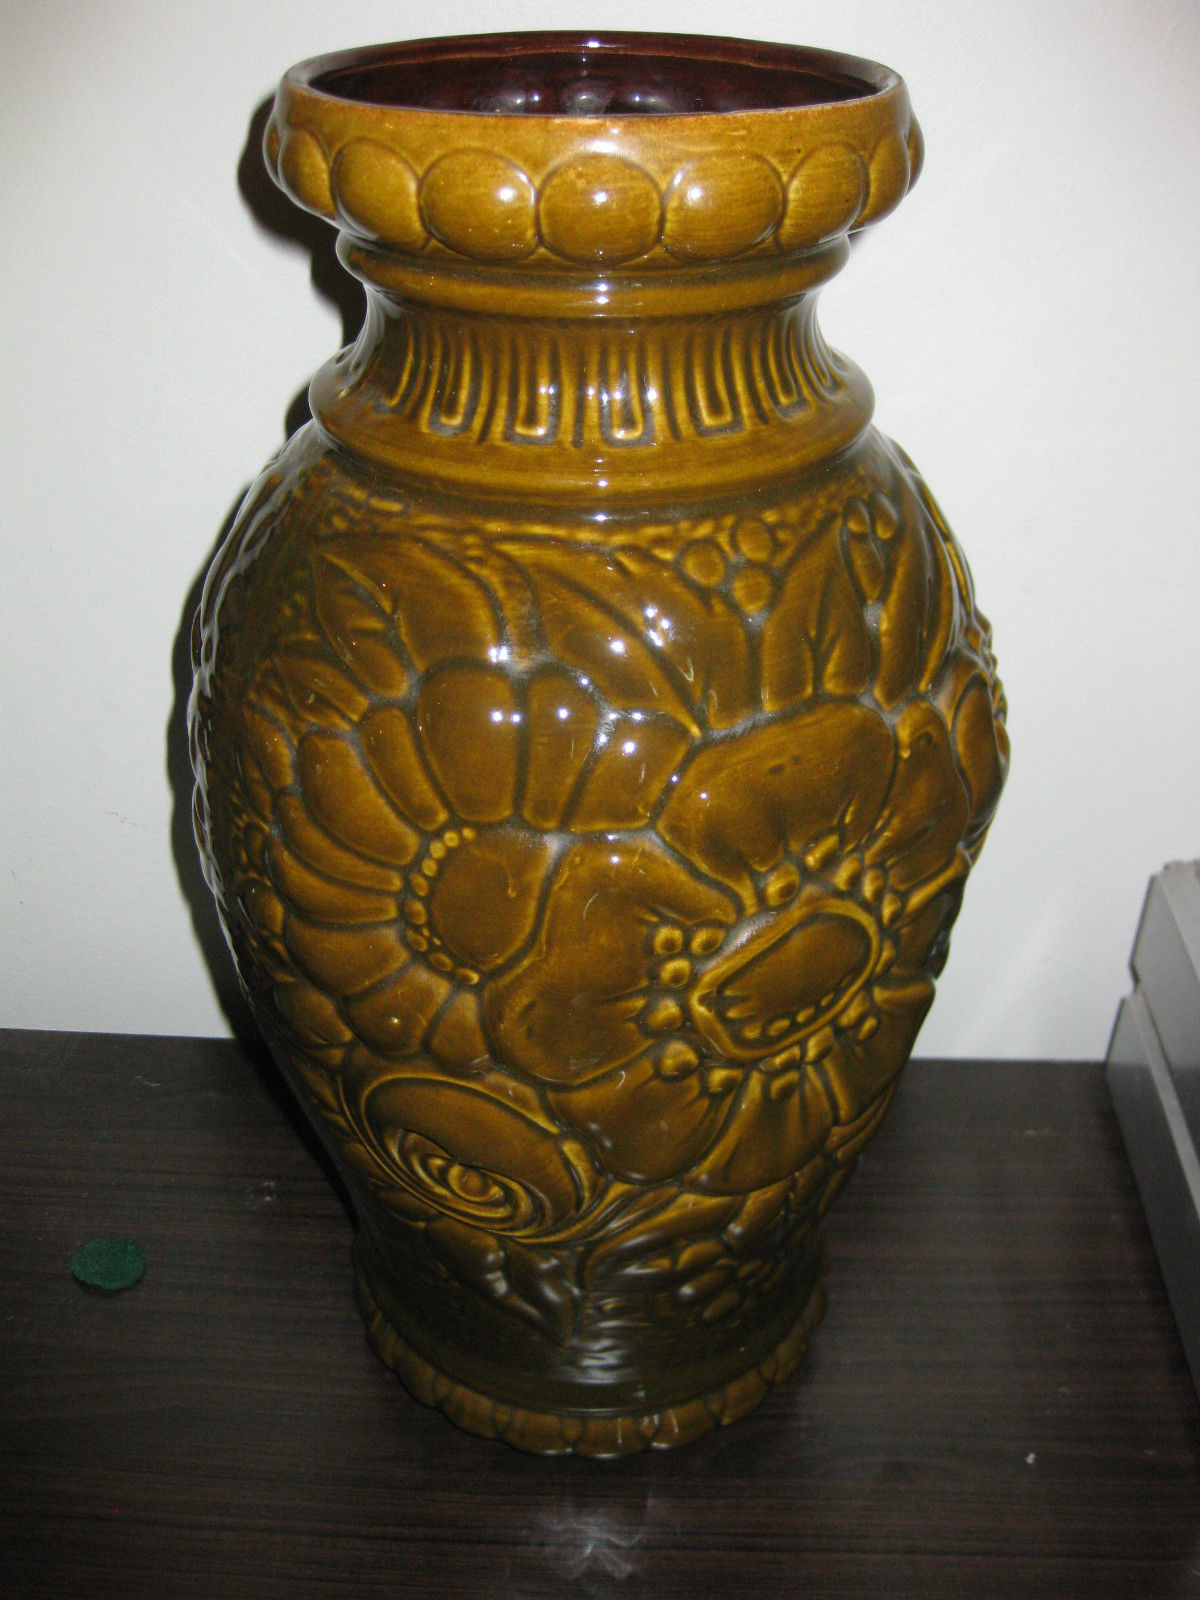 bay vase west germany of vintage german vase 548 17 intended for west german pottery etsy uk